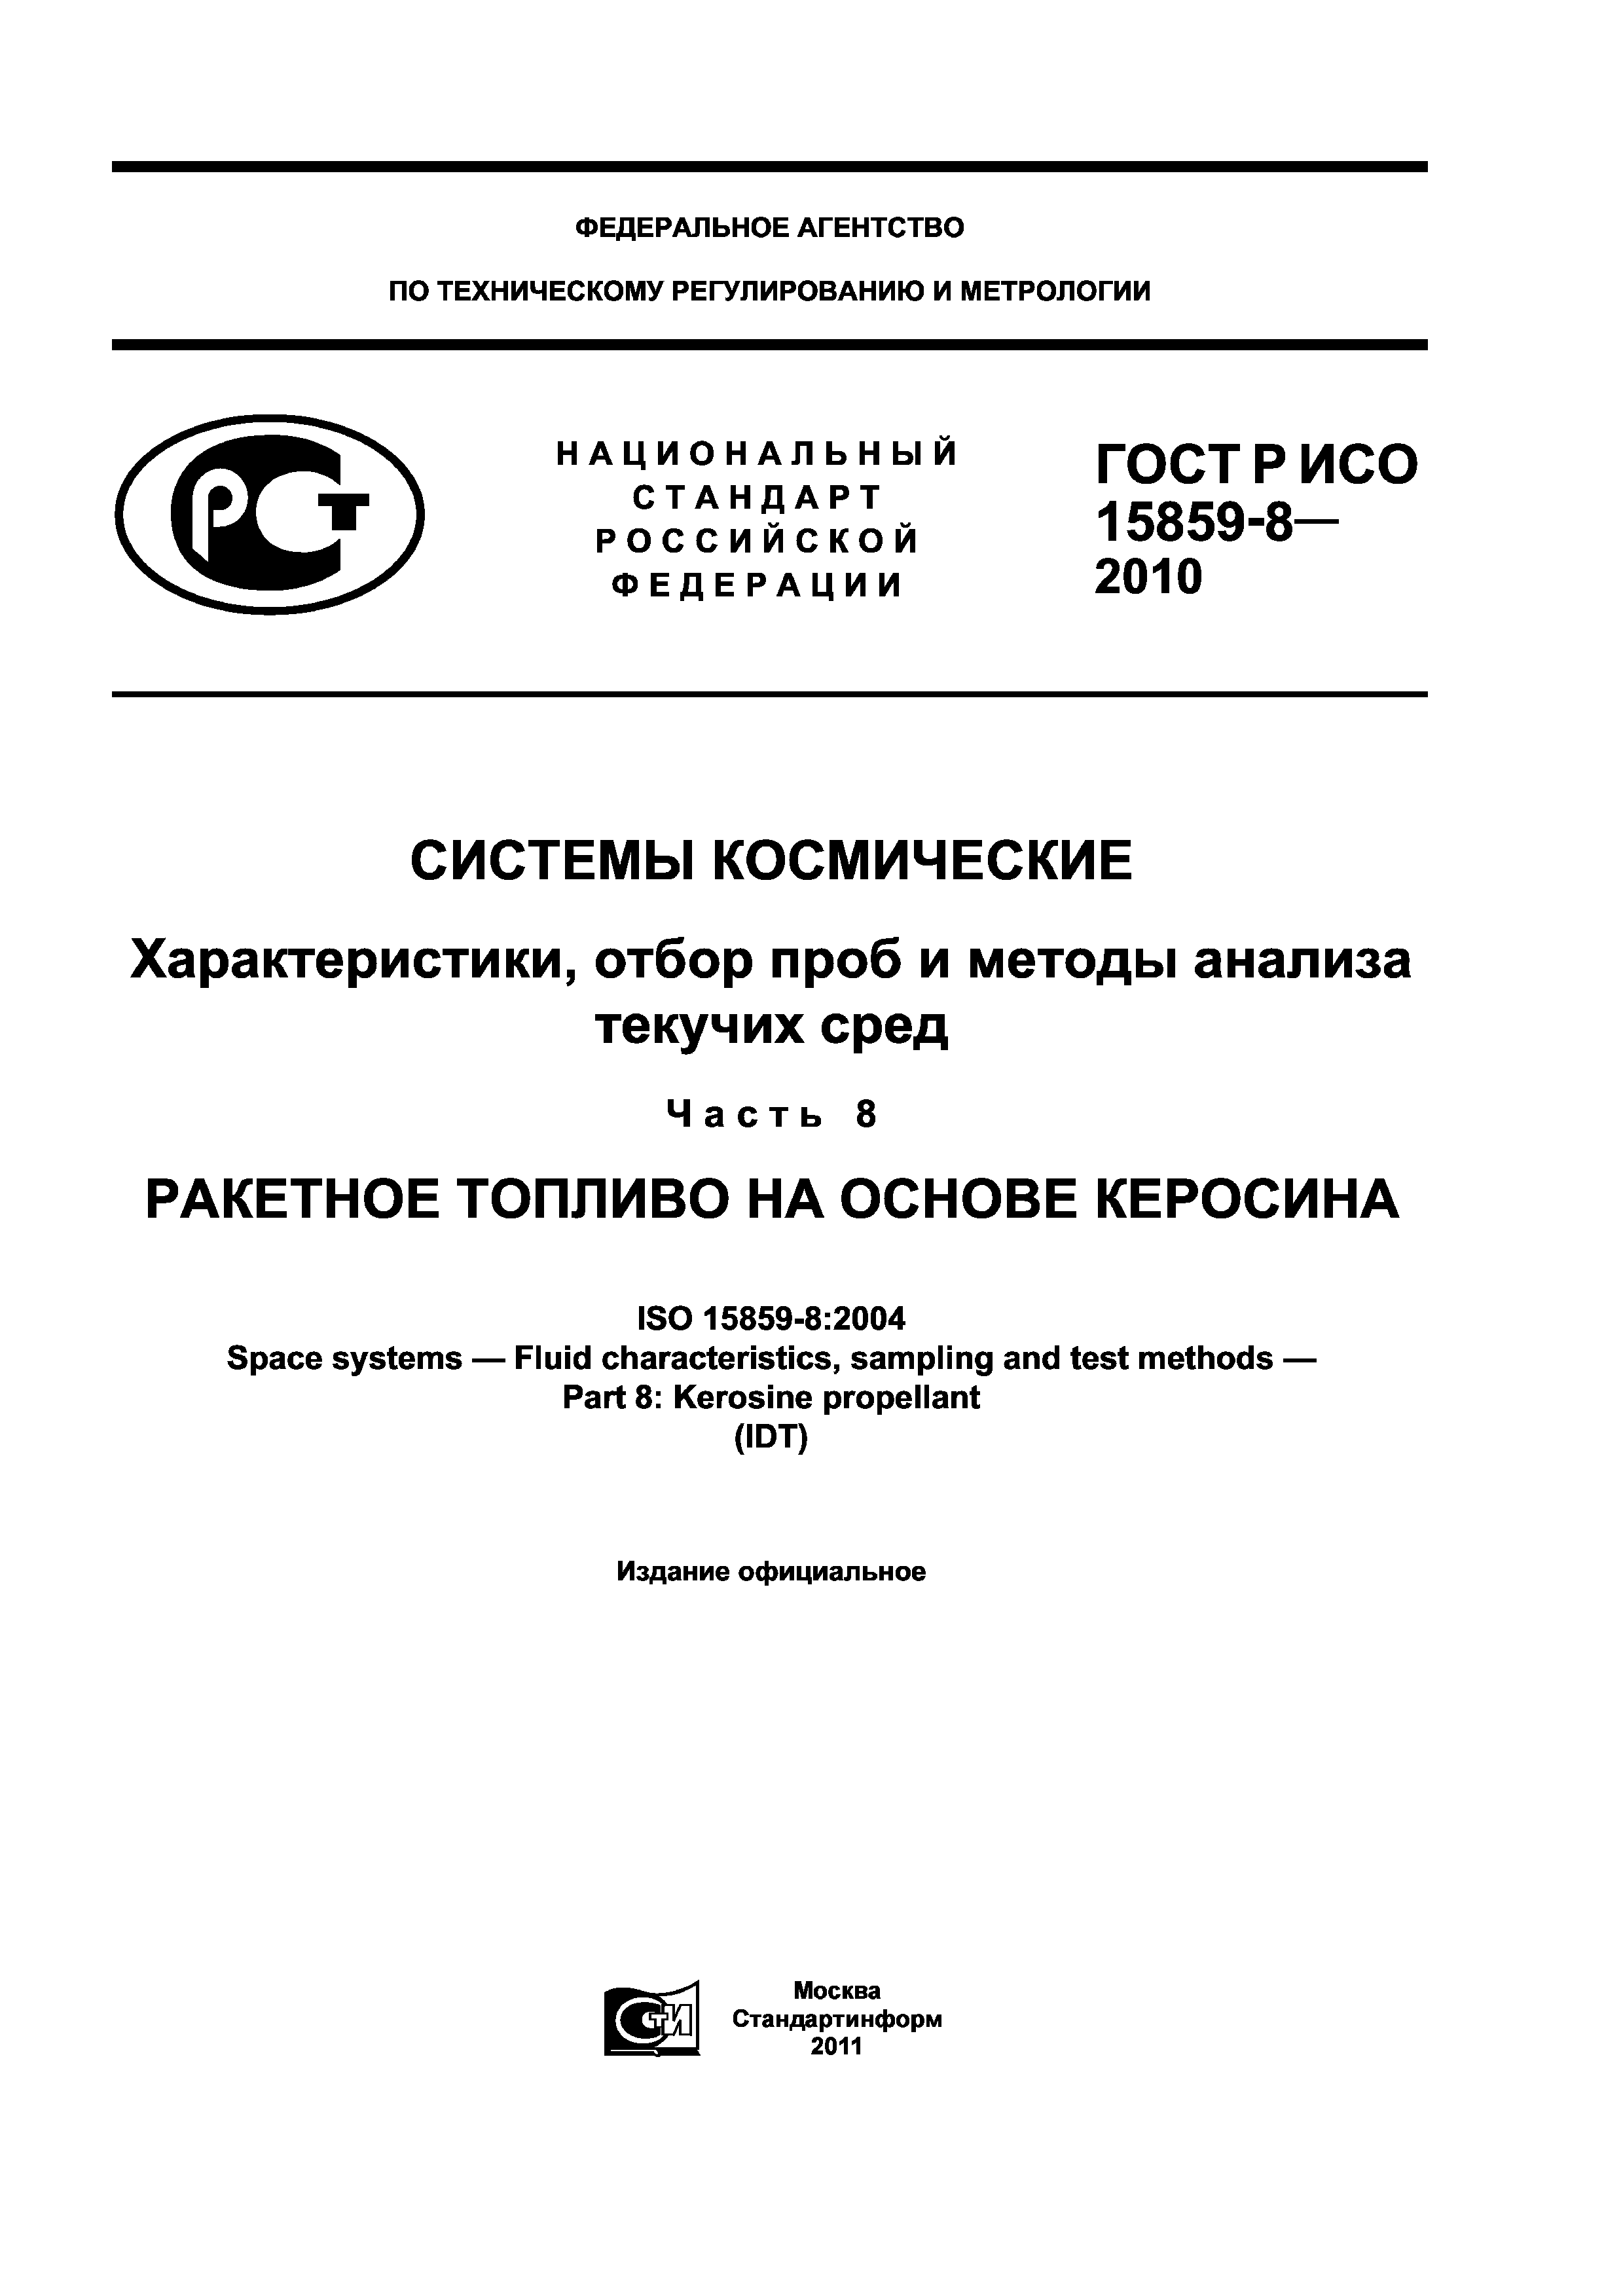 ГОСТ Р ИСО 15859-8-2010